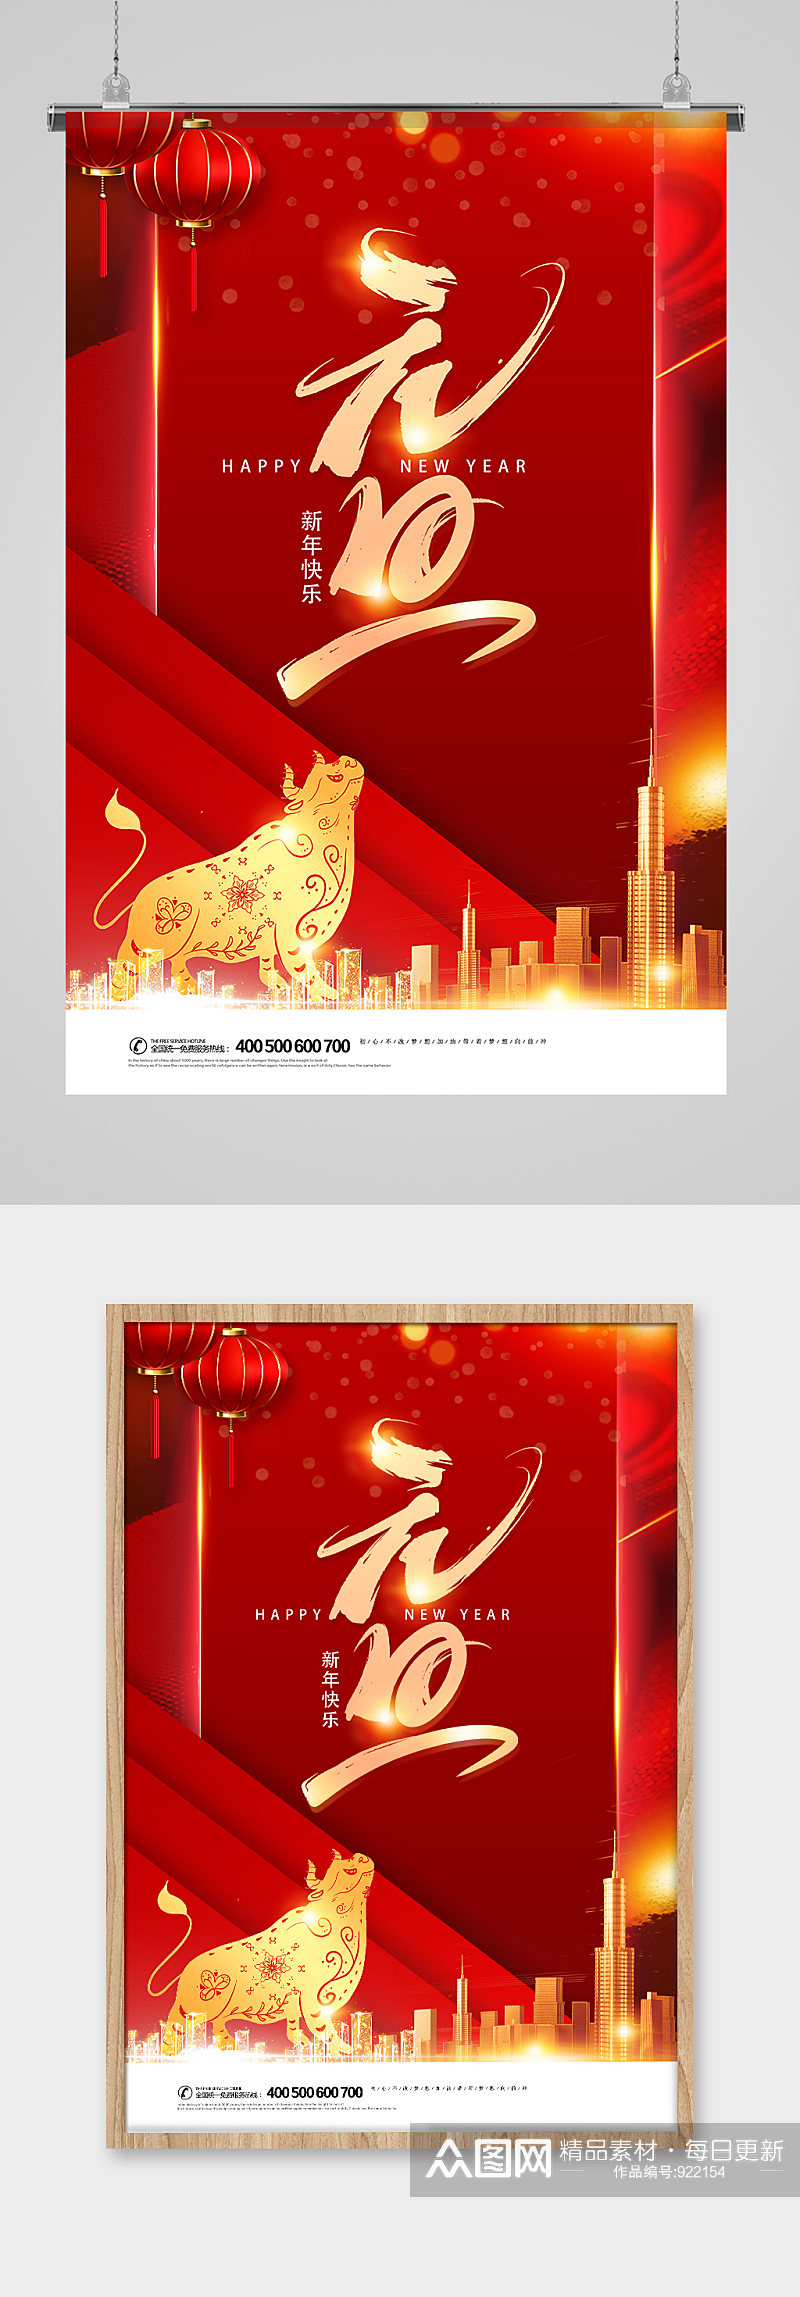 2021年红色创新元旦节竖版宣传海报素材